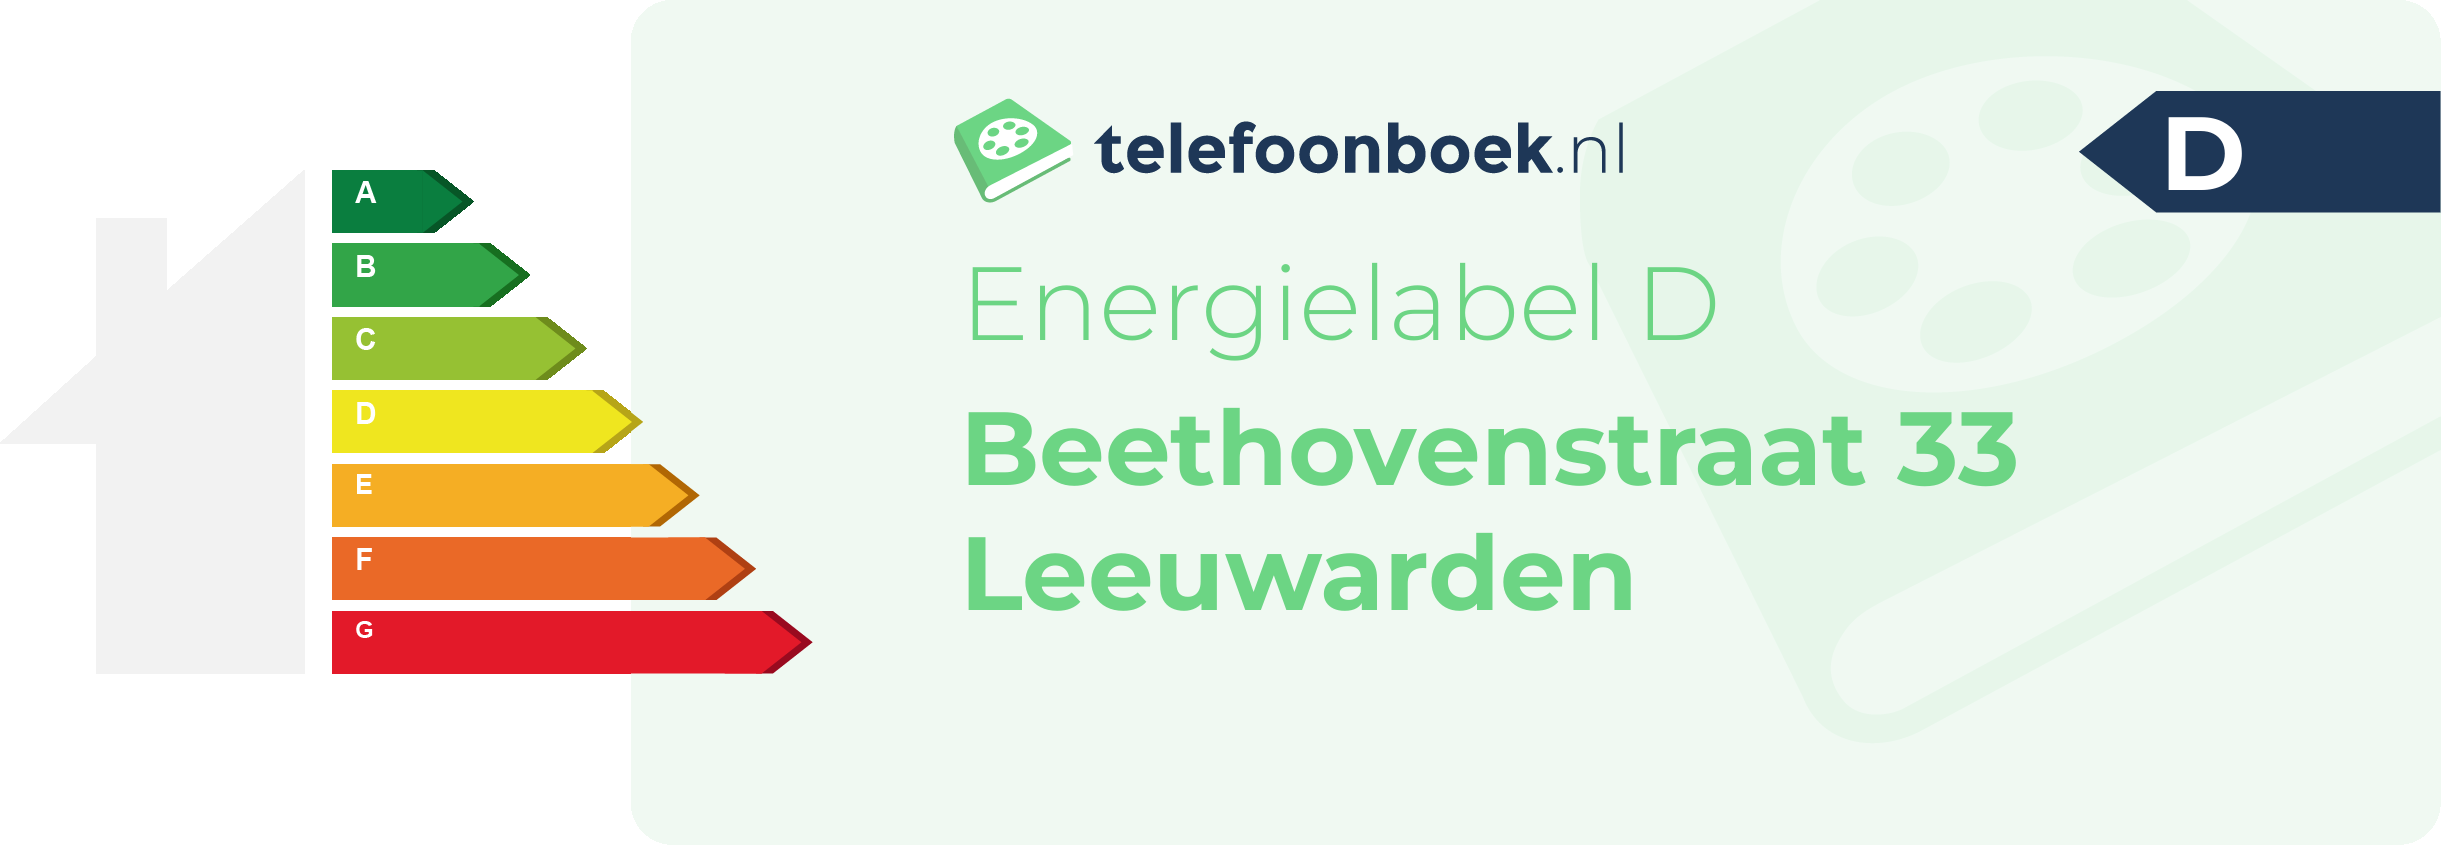 Energielabel Beethovenstraat 33 Leeuwarden